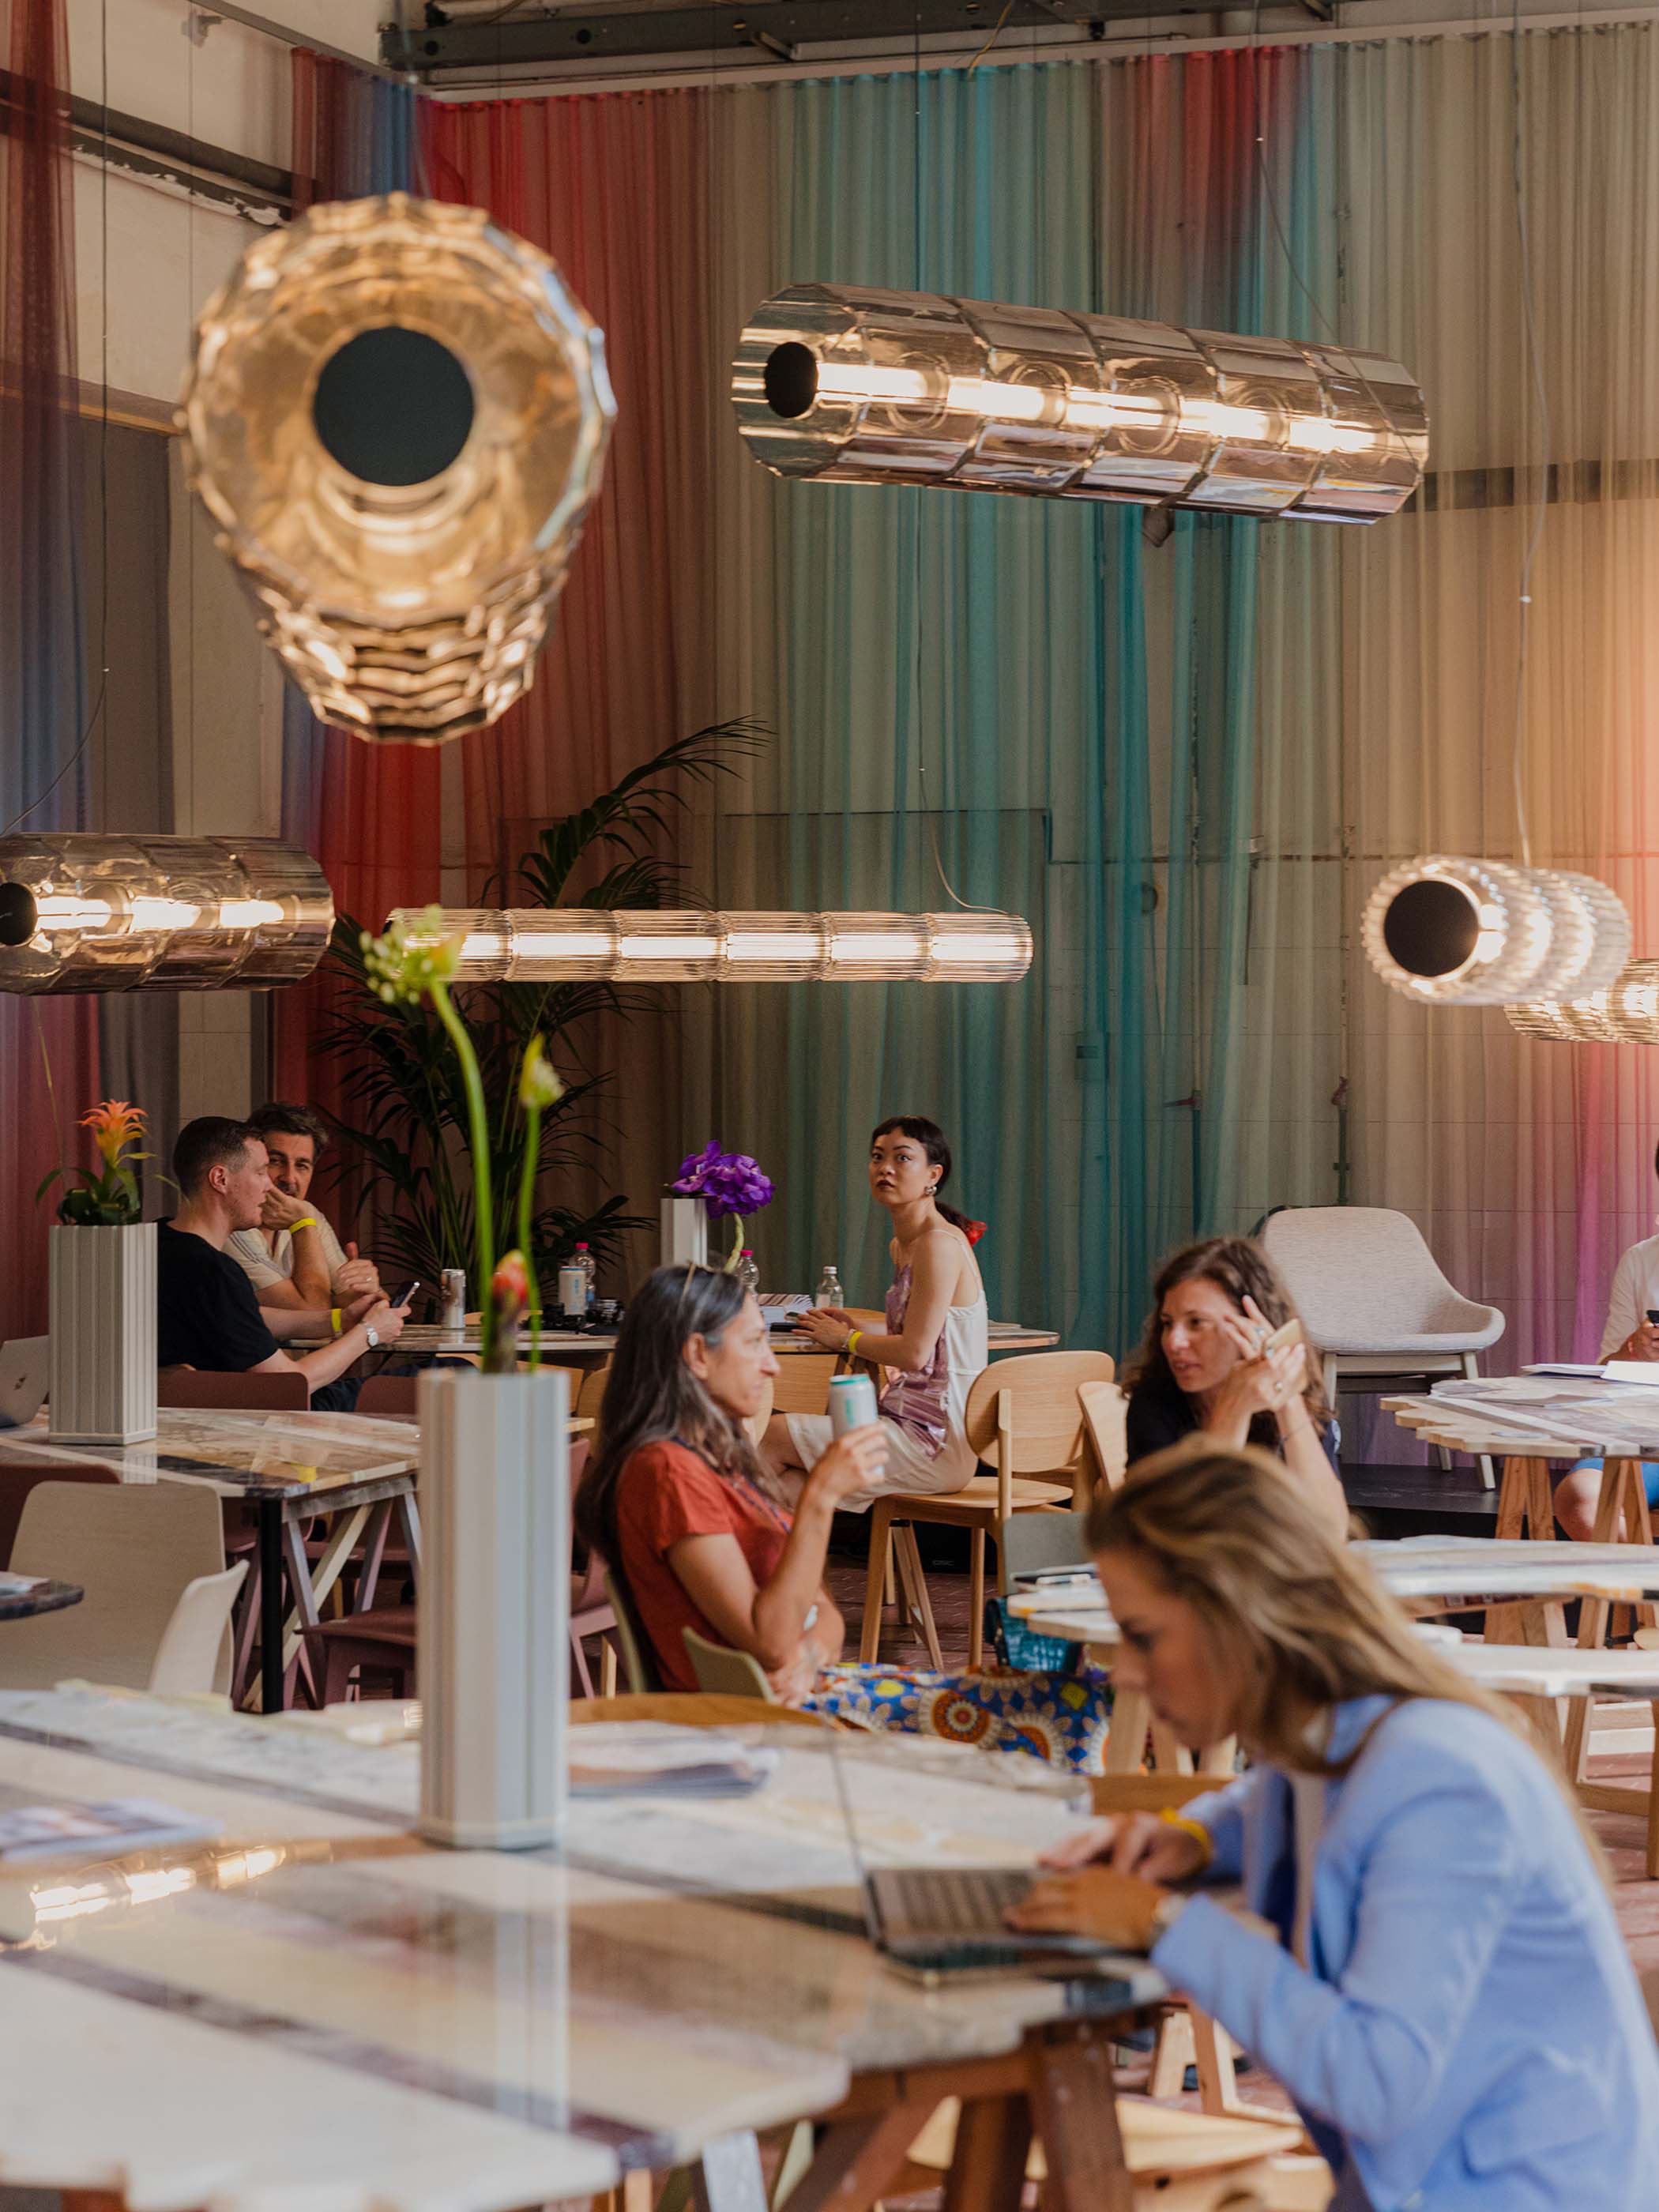 圆柱形的灯具悬挂在咖啡馆空间的天花板上